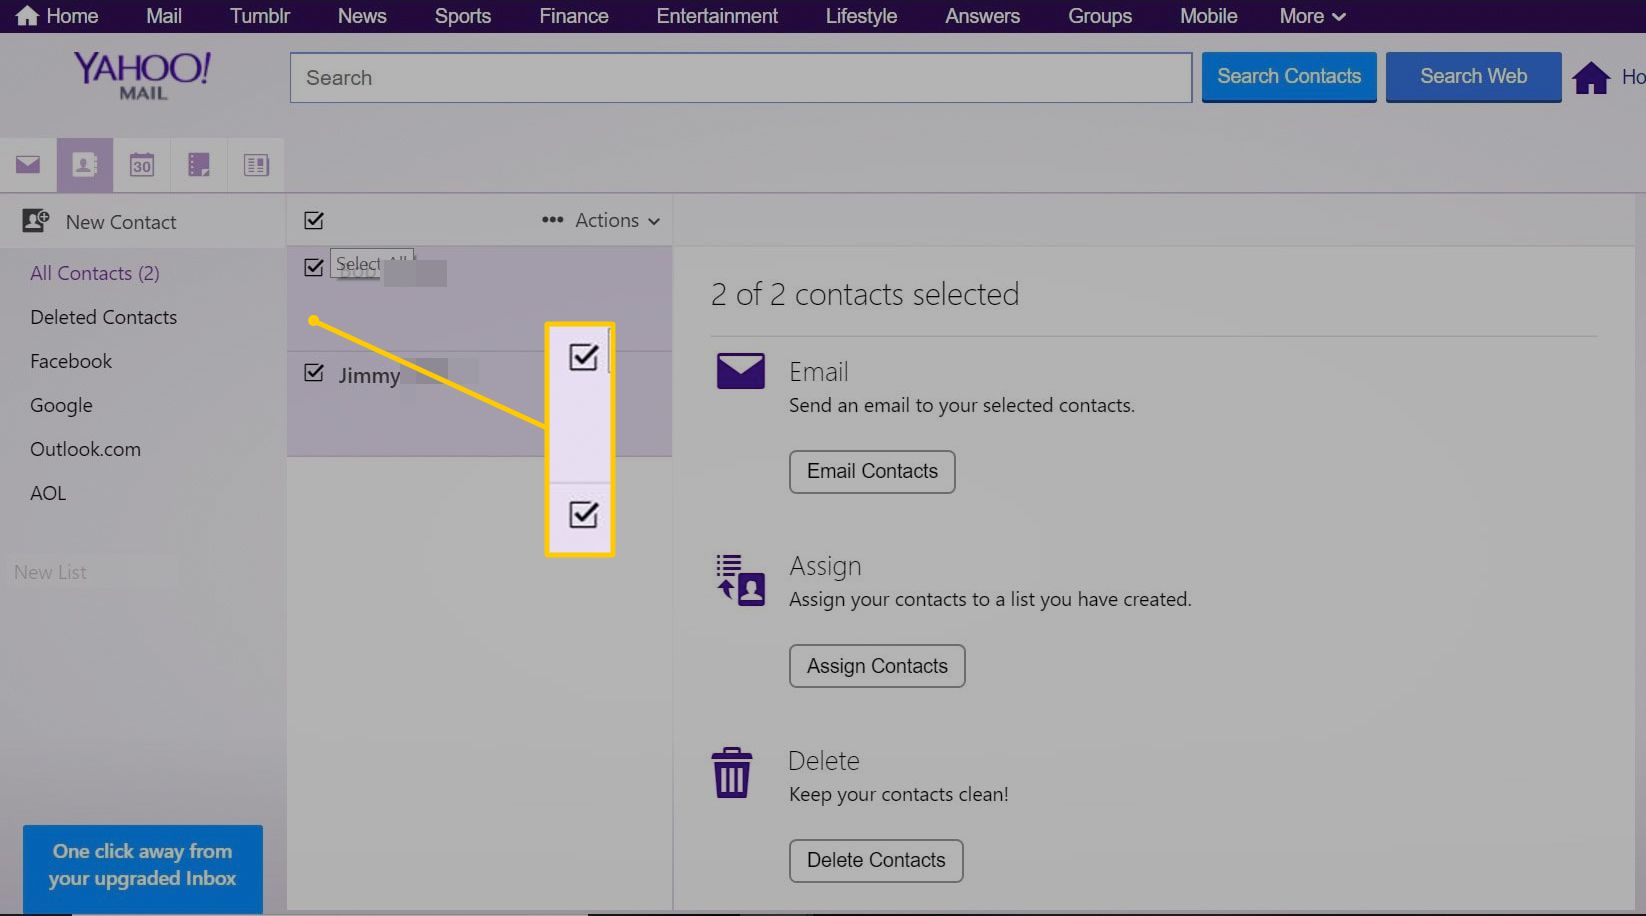 Caixas de seleção para selecionar contatos no Yahoo Mail